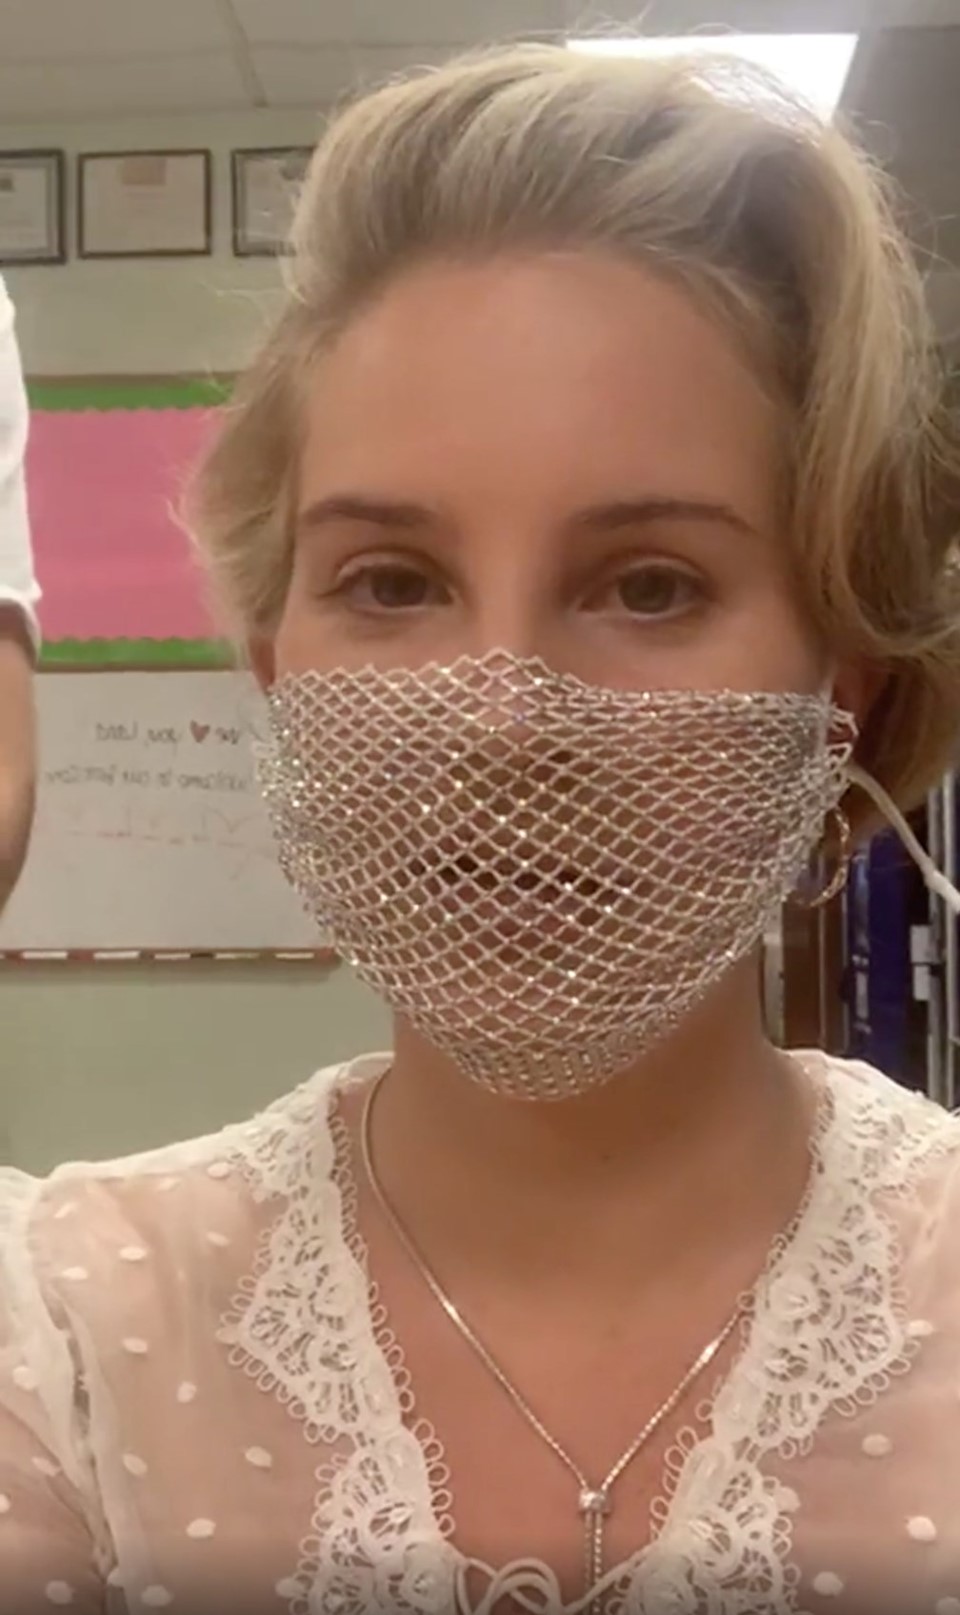 Lana Del Rey addresses backlash for wearing a mesh mask at a book signing | Dazed